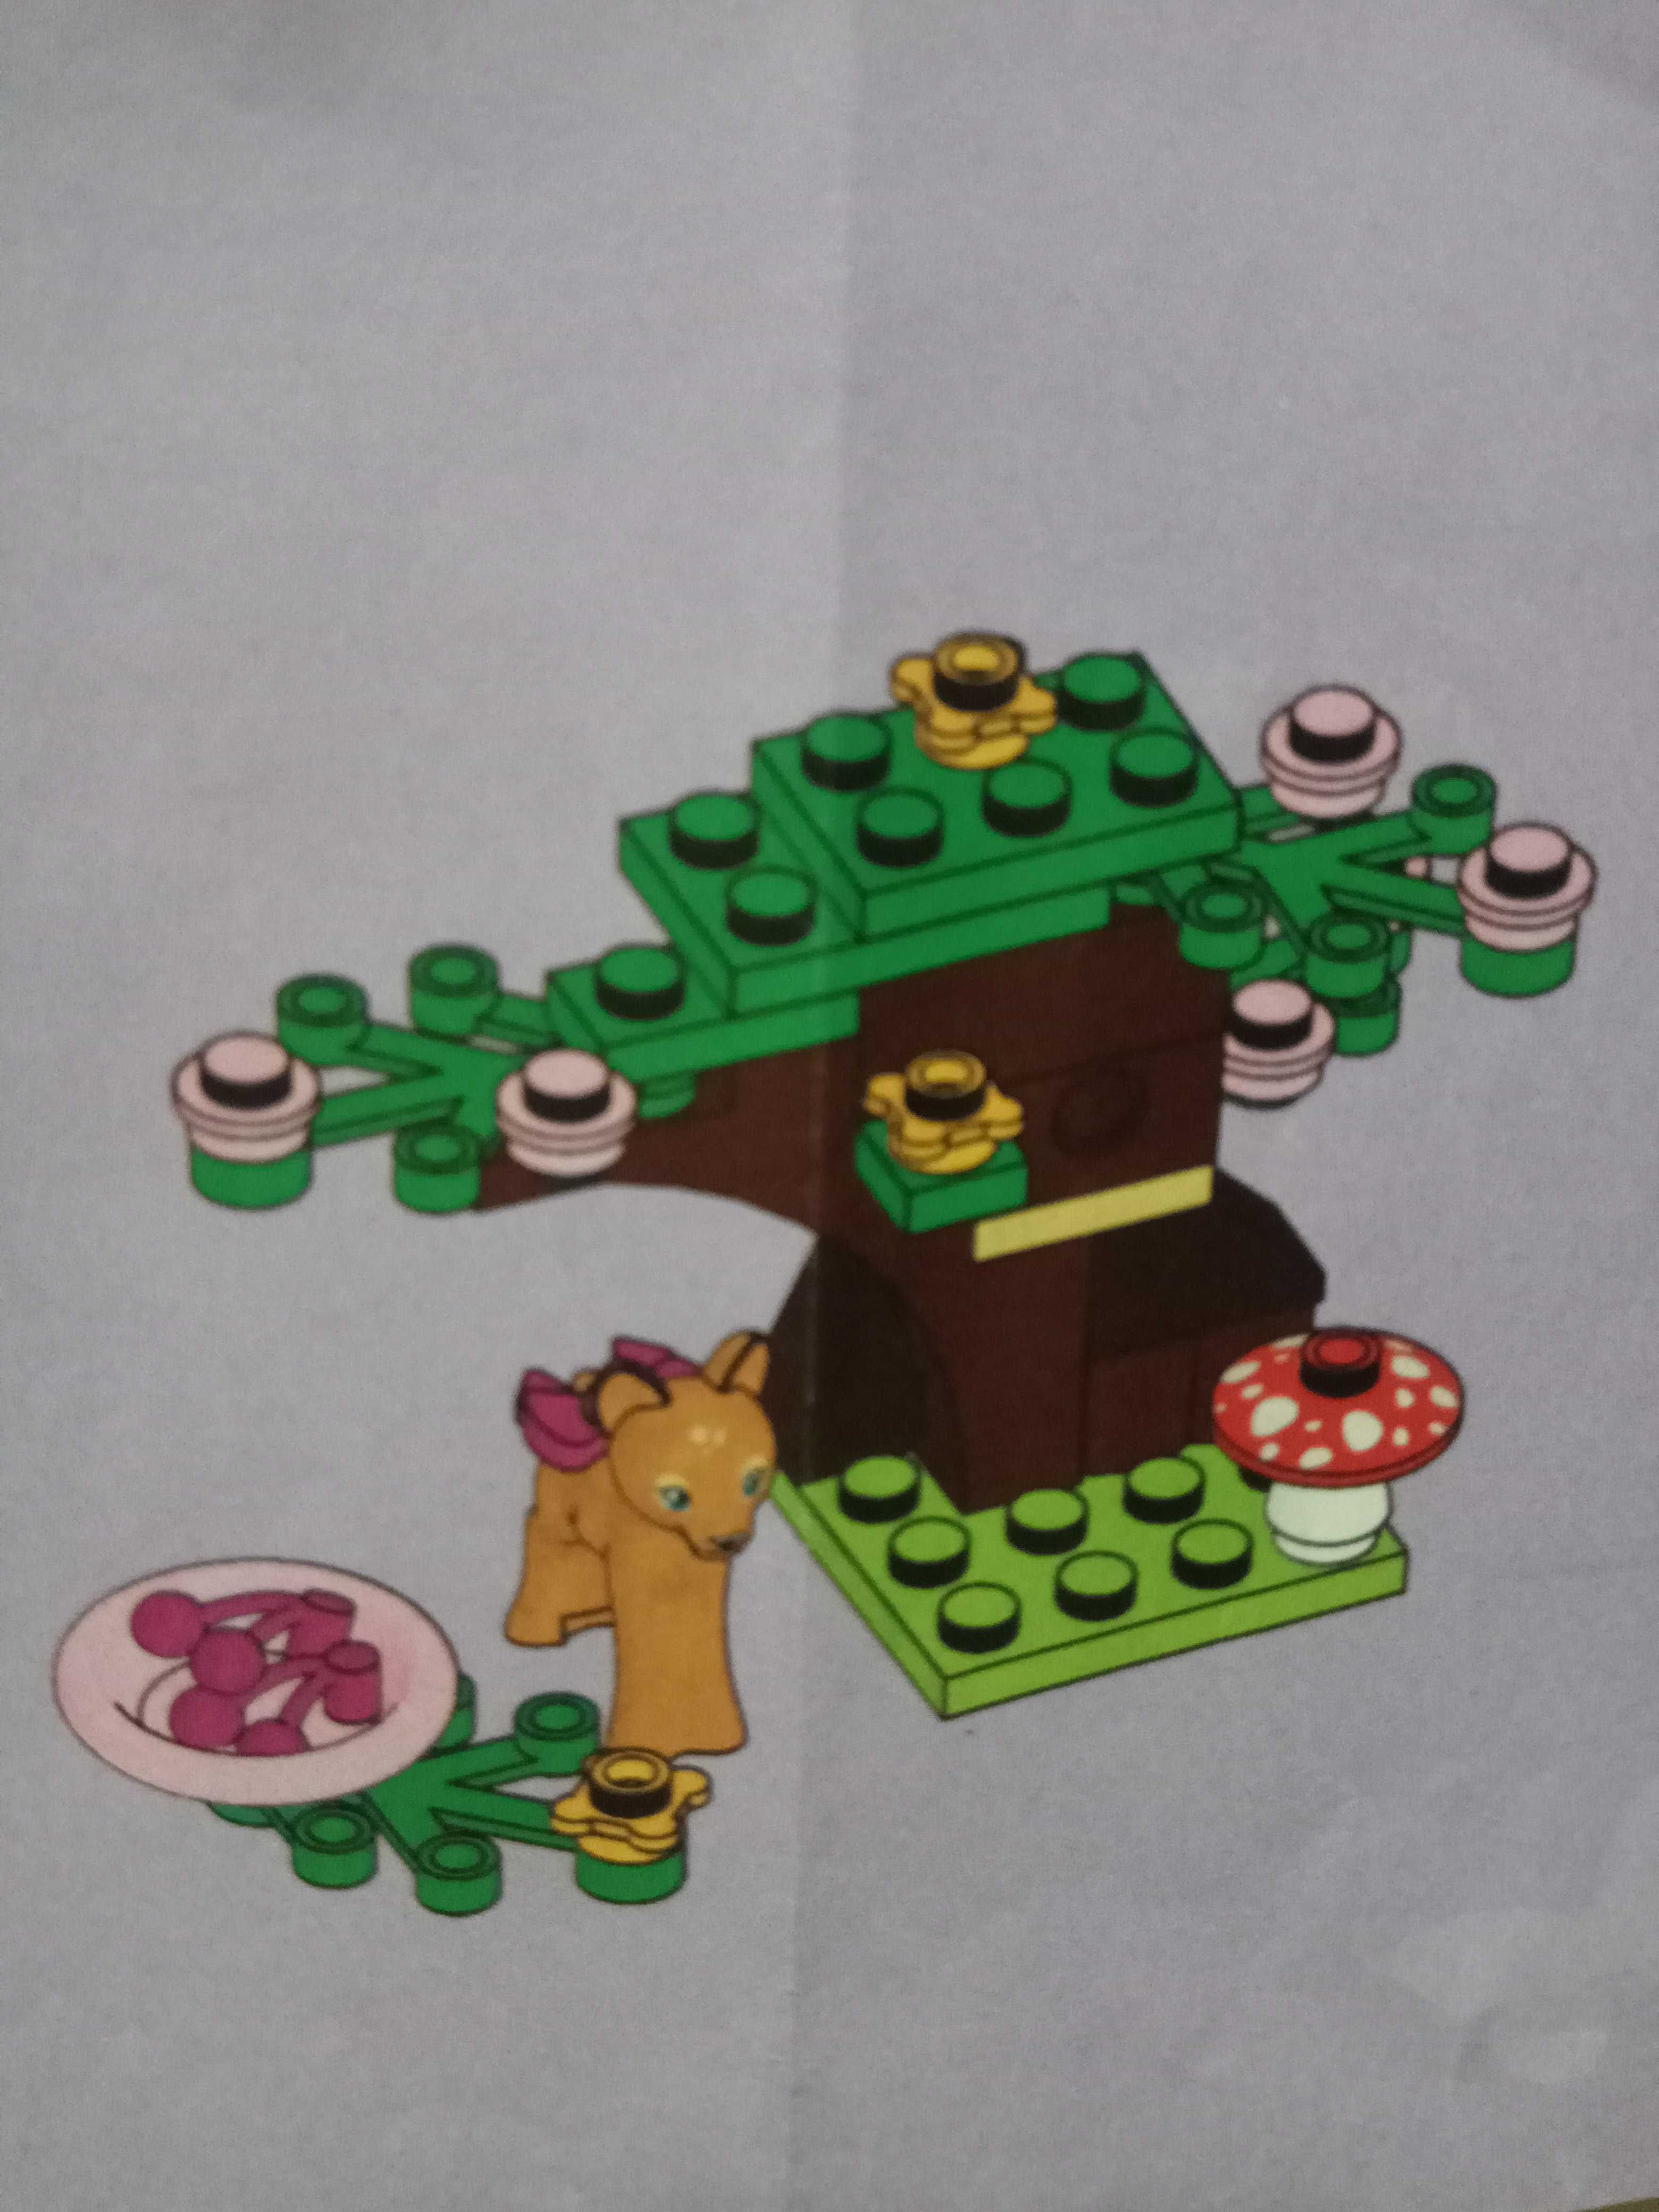 ОРИГИНАЛ! Конструктор LEGO Friends Лего Френдс Оленёнок в лесу.ЗВОНИТЕ